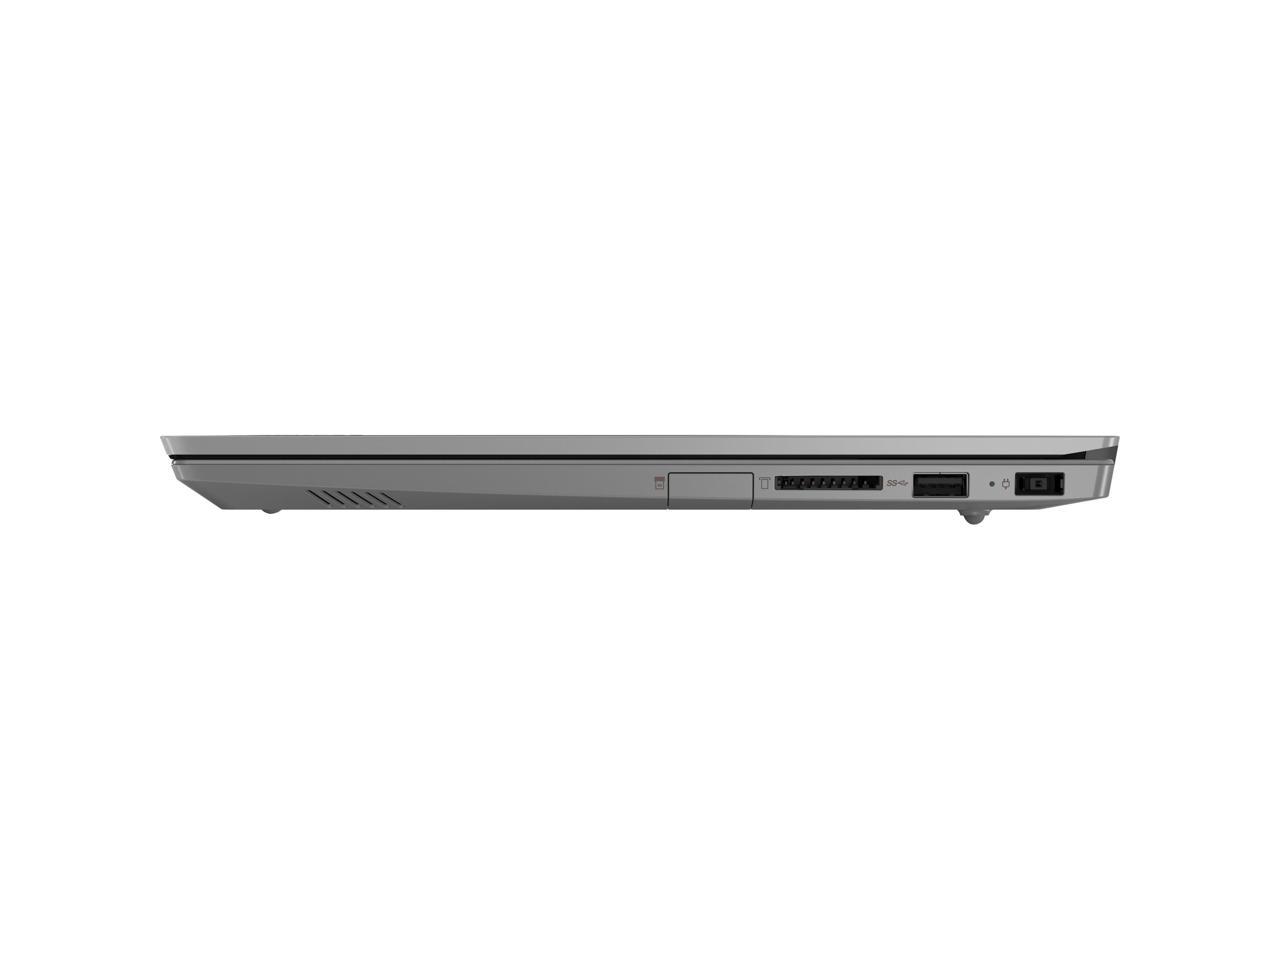 Lenovo ThinkBook 14-IIL 14" Full HD Laptop i5-1035G1 8GB 256GB SSD Win 10 Pro